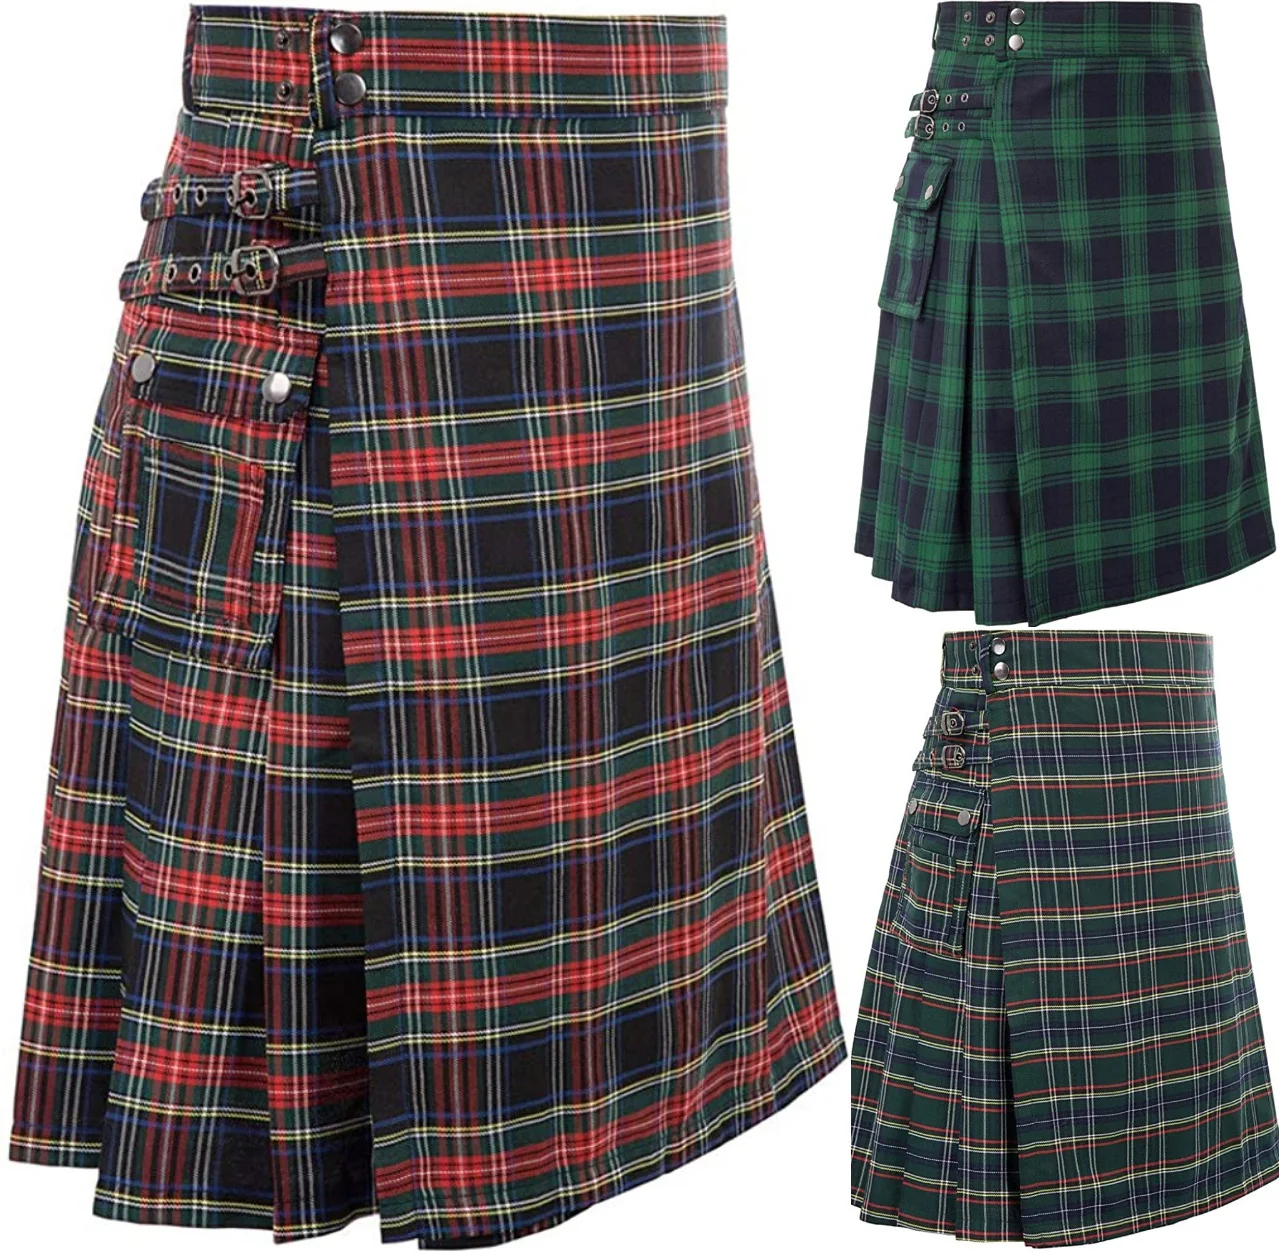 Mens Scottish Traditional Highland Tartan Kilt skirt  maxi skirt  skirts for women  skirts womens 2021 punk skirt